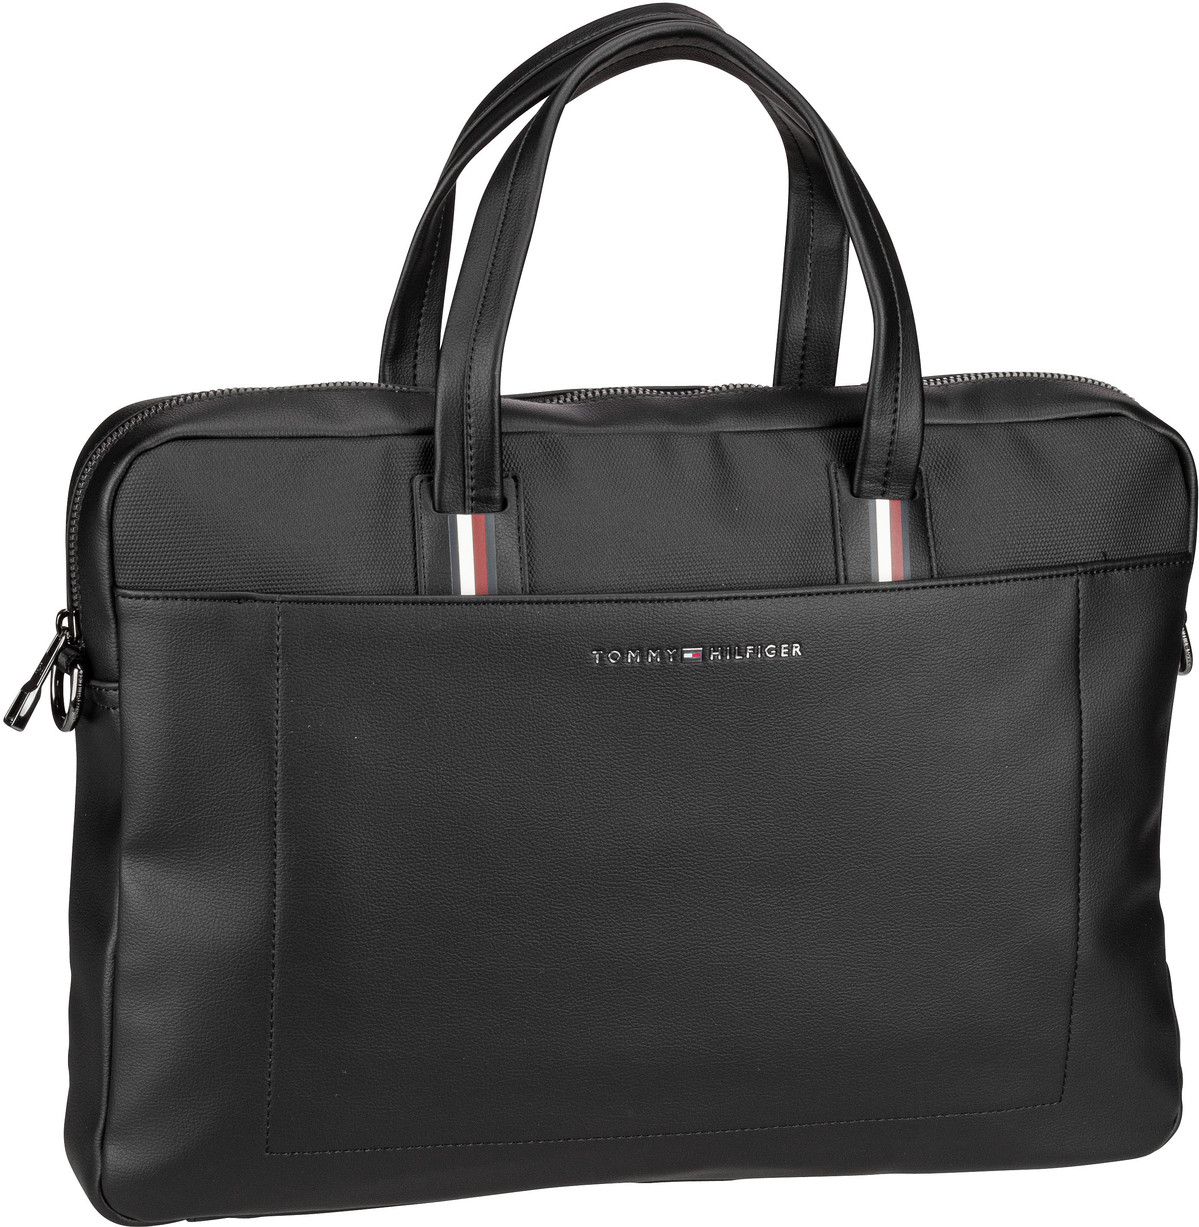 Tommy Hilfiger TH Corporate Computer Bag PSP24  in Black (9 Liter), Aktentasche